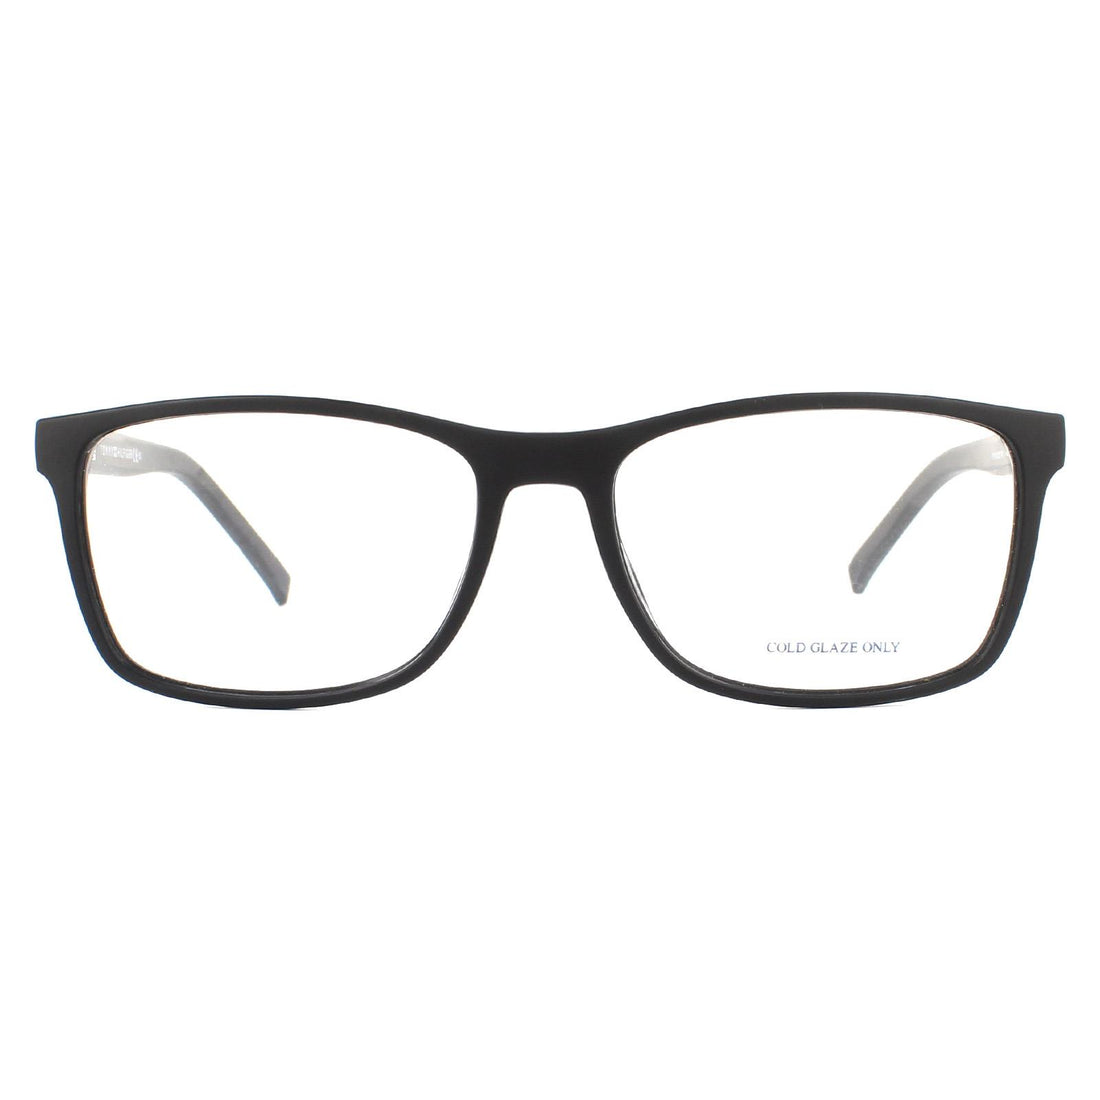 Tommy Hilfiger TH 1785 Glasses Frames Matte Black